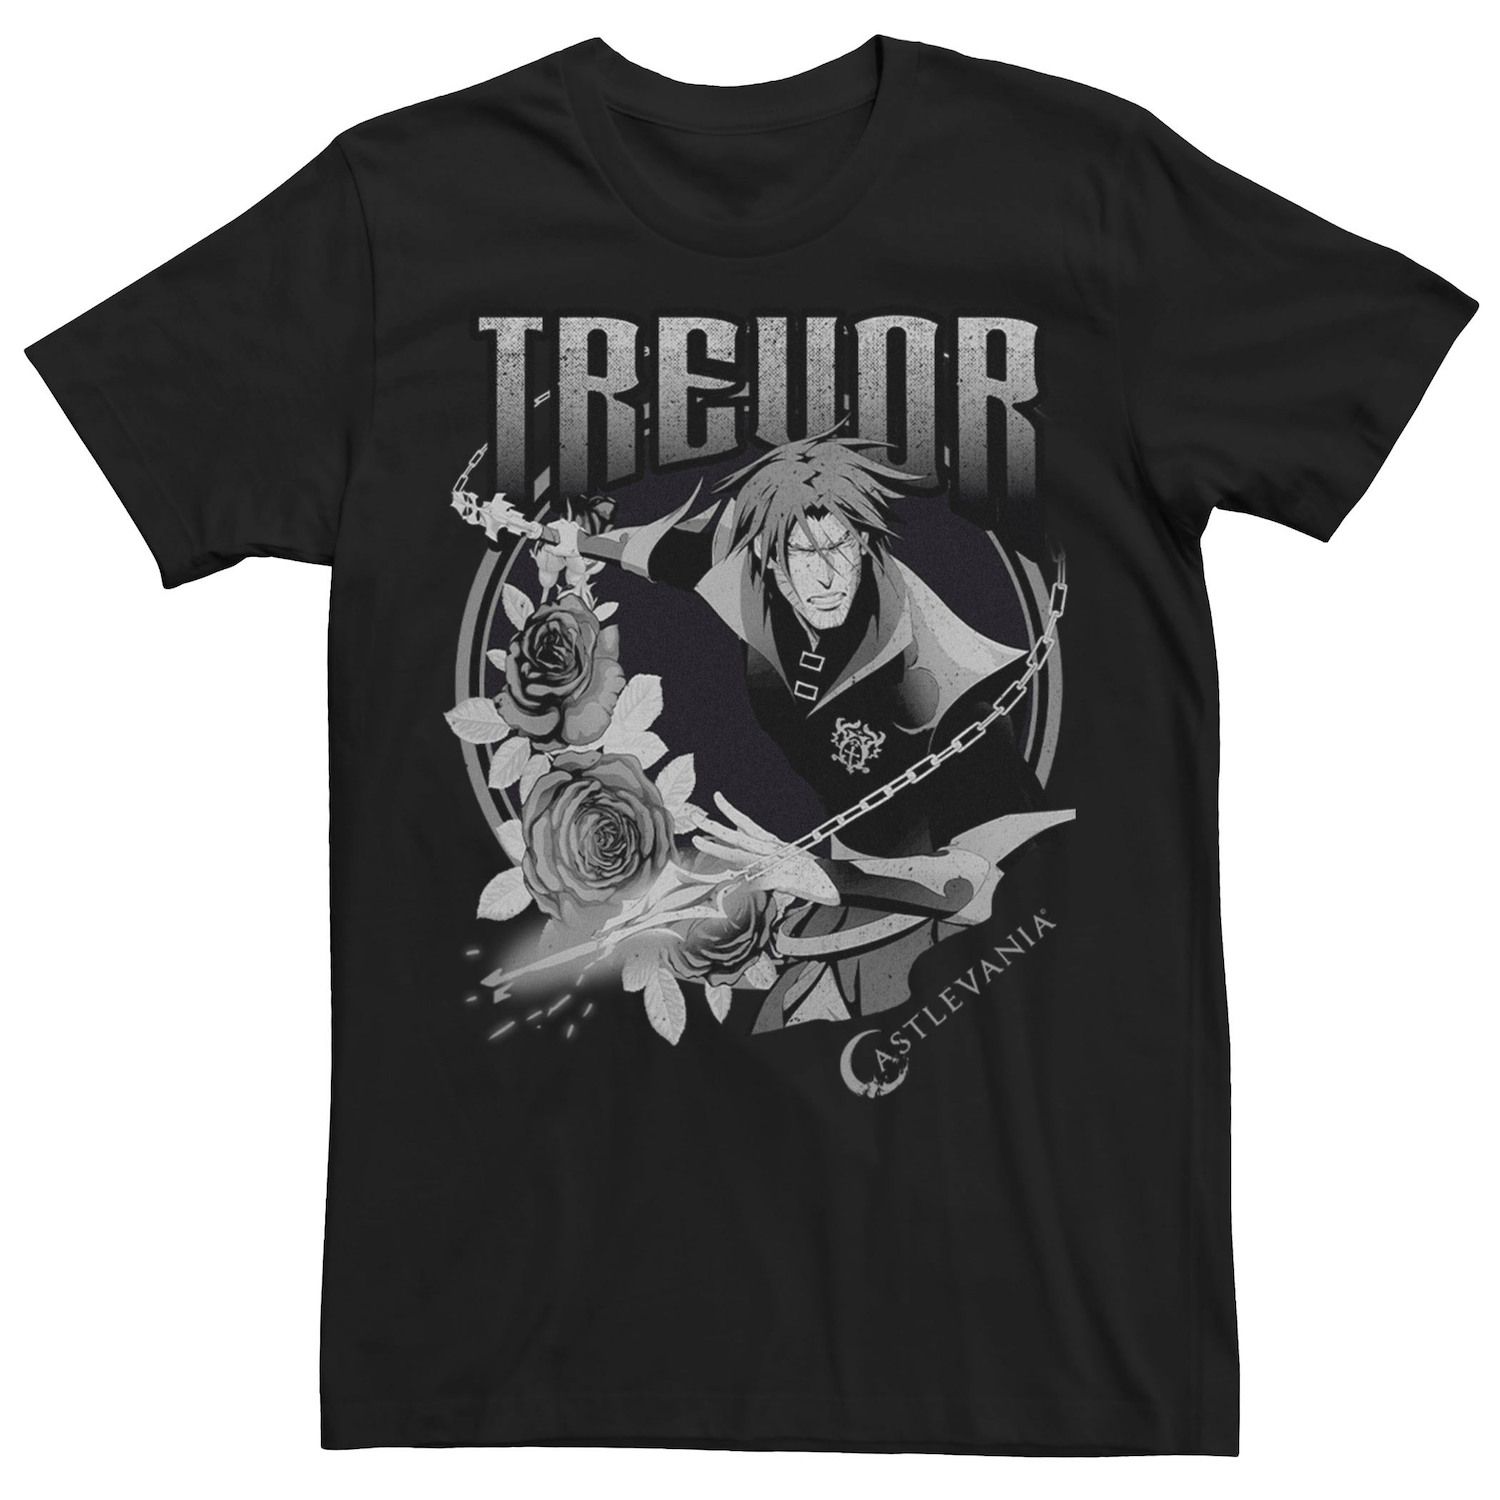 Мужская футболка Netflix Castlevania Trevor Licensed Character цена и фото